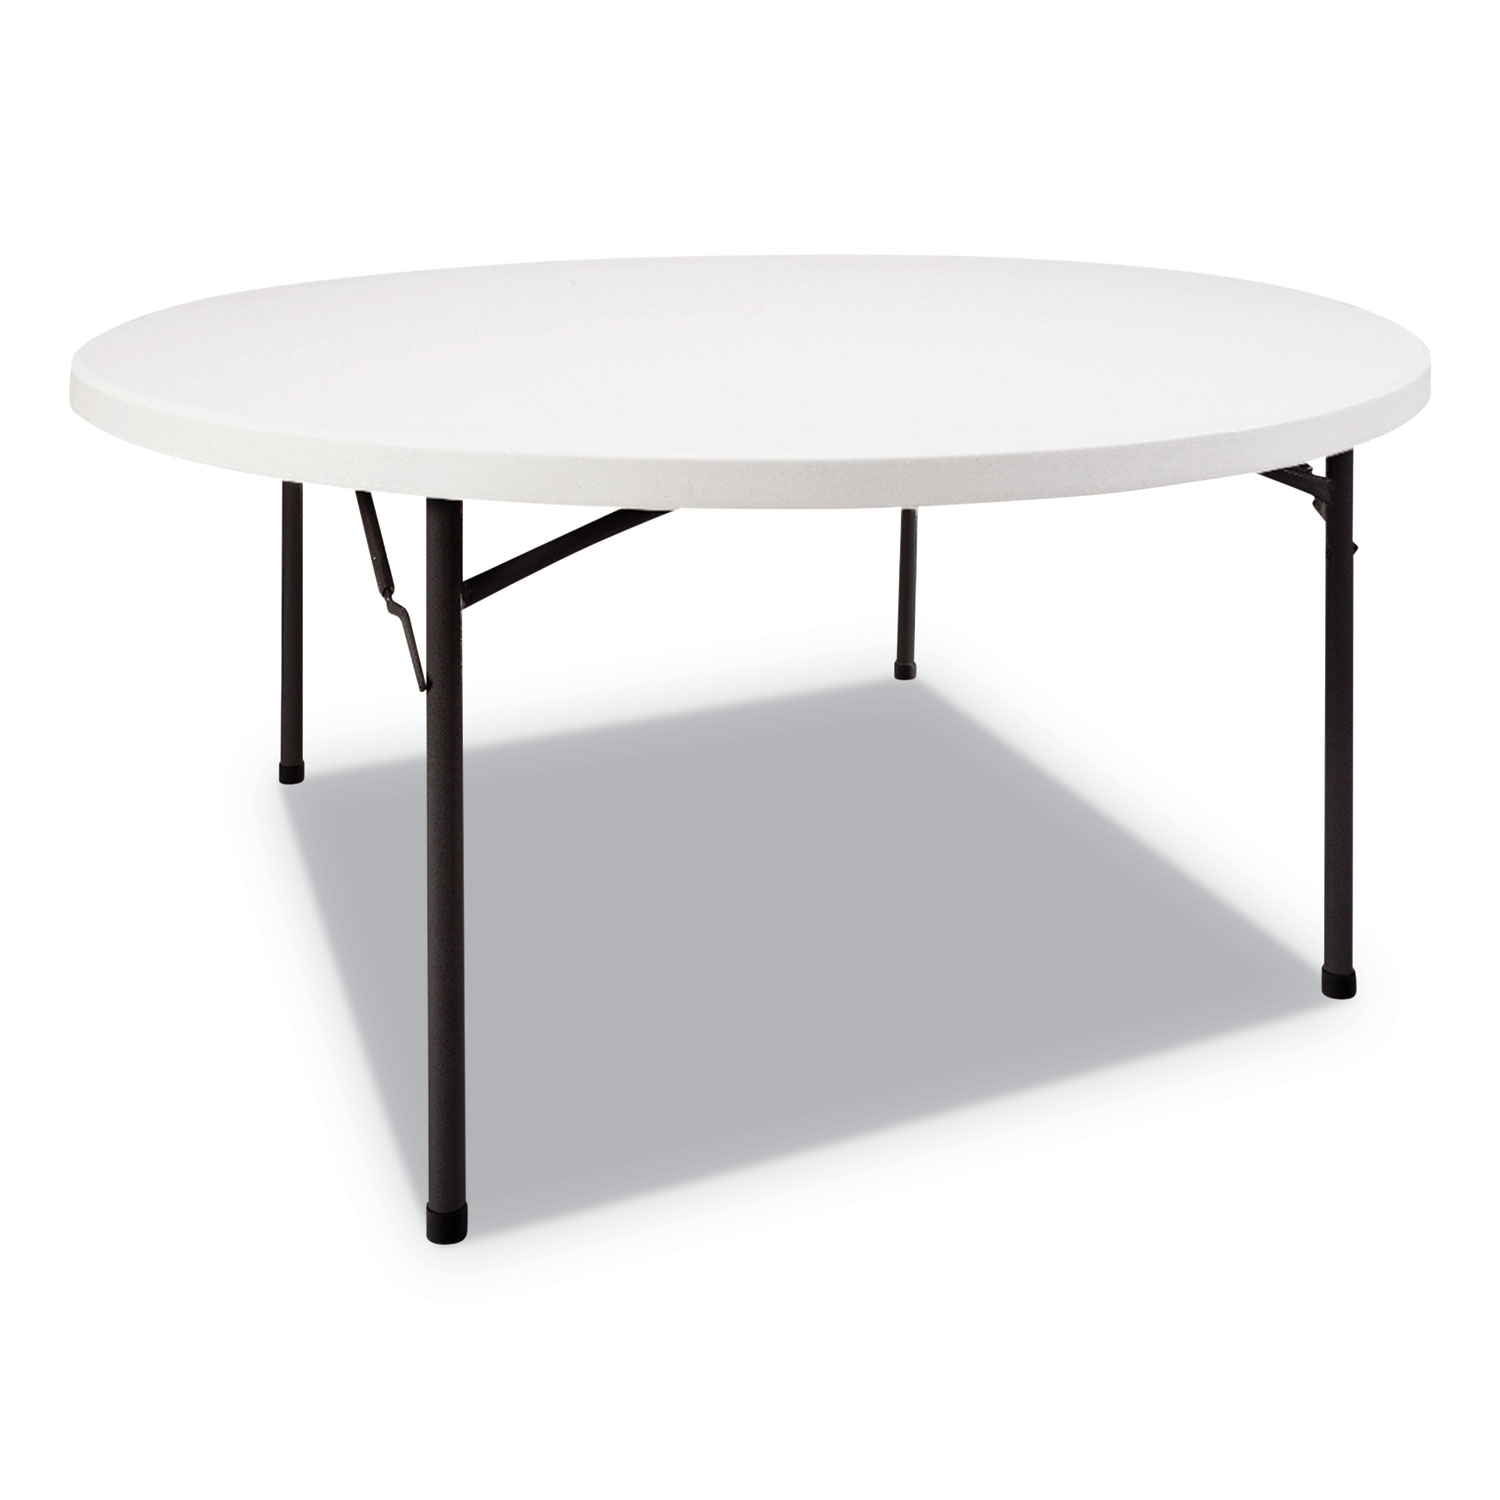 Round Plastic Folding Table, 60 Dia x 29h, White